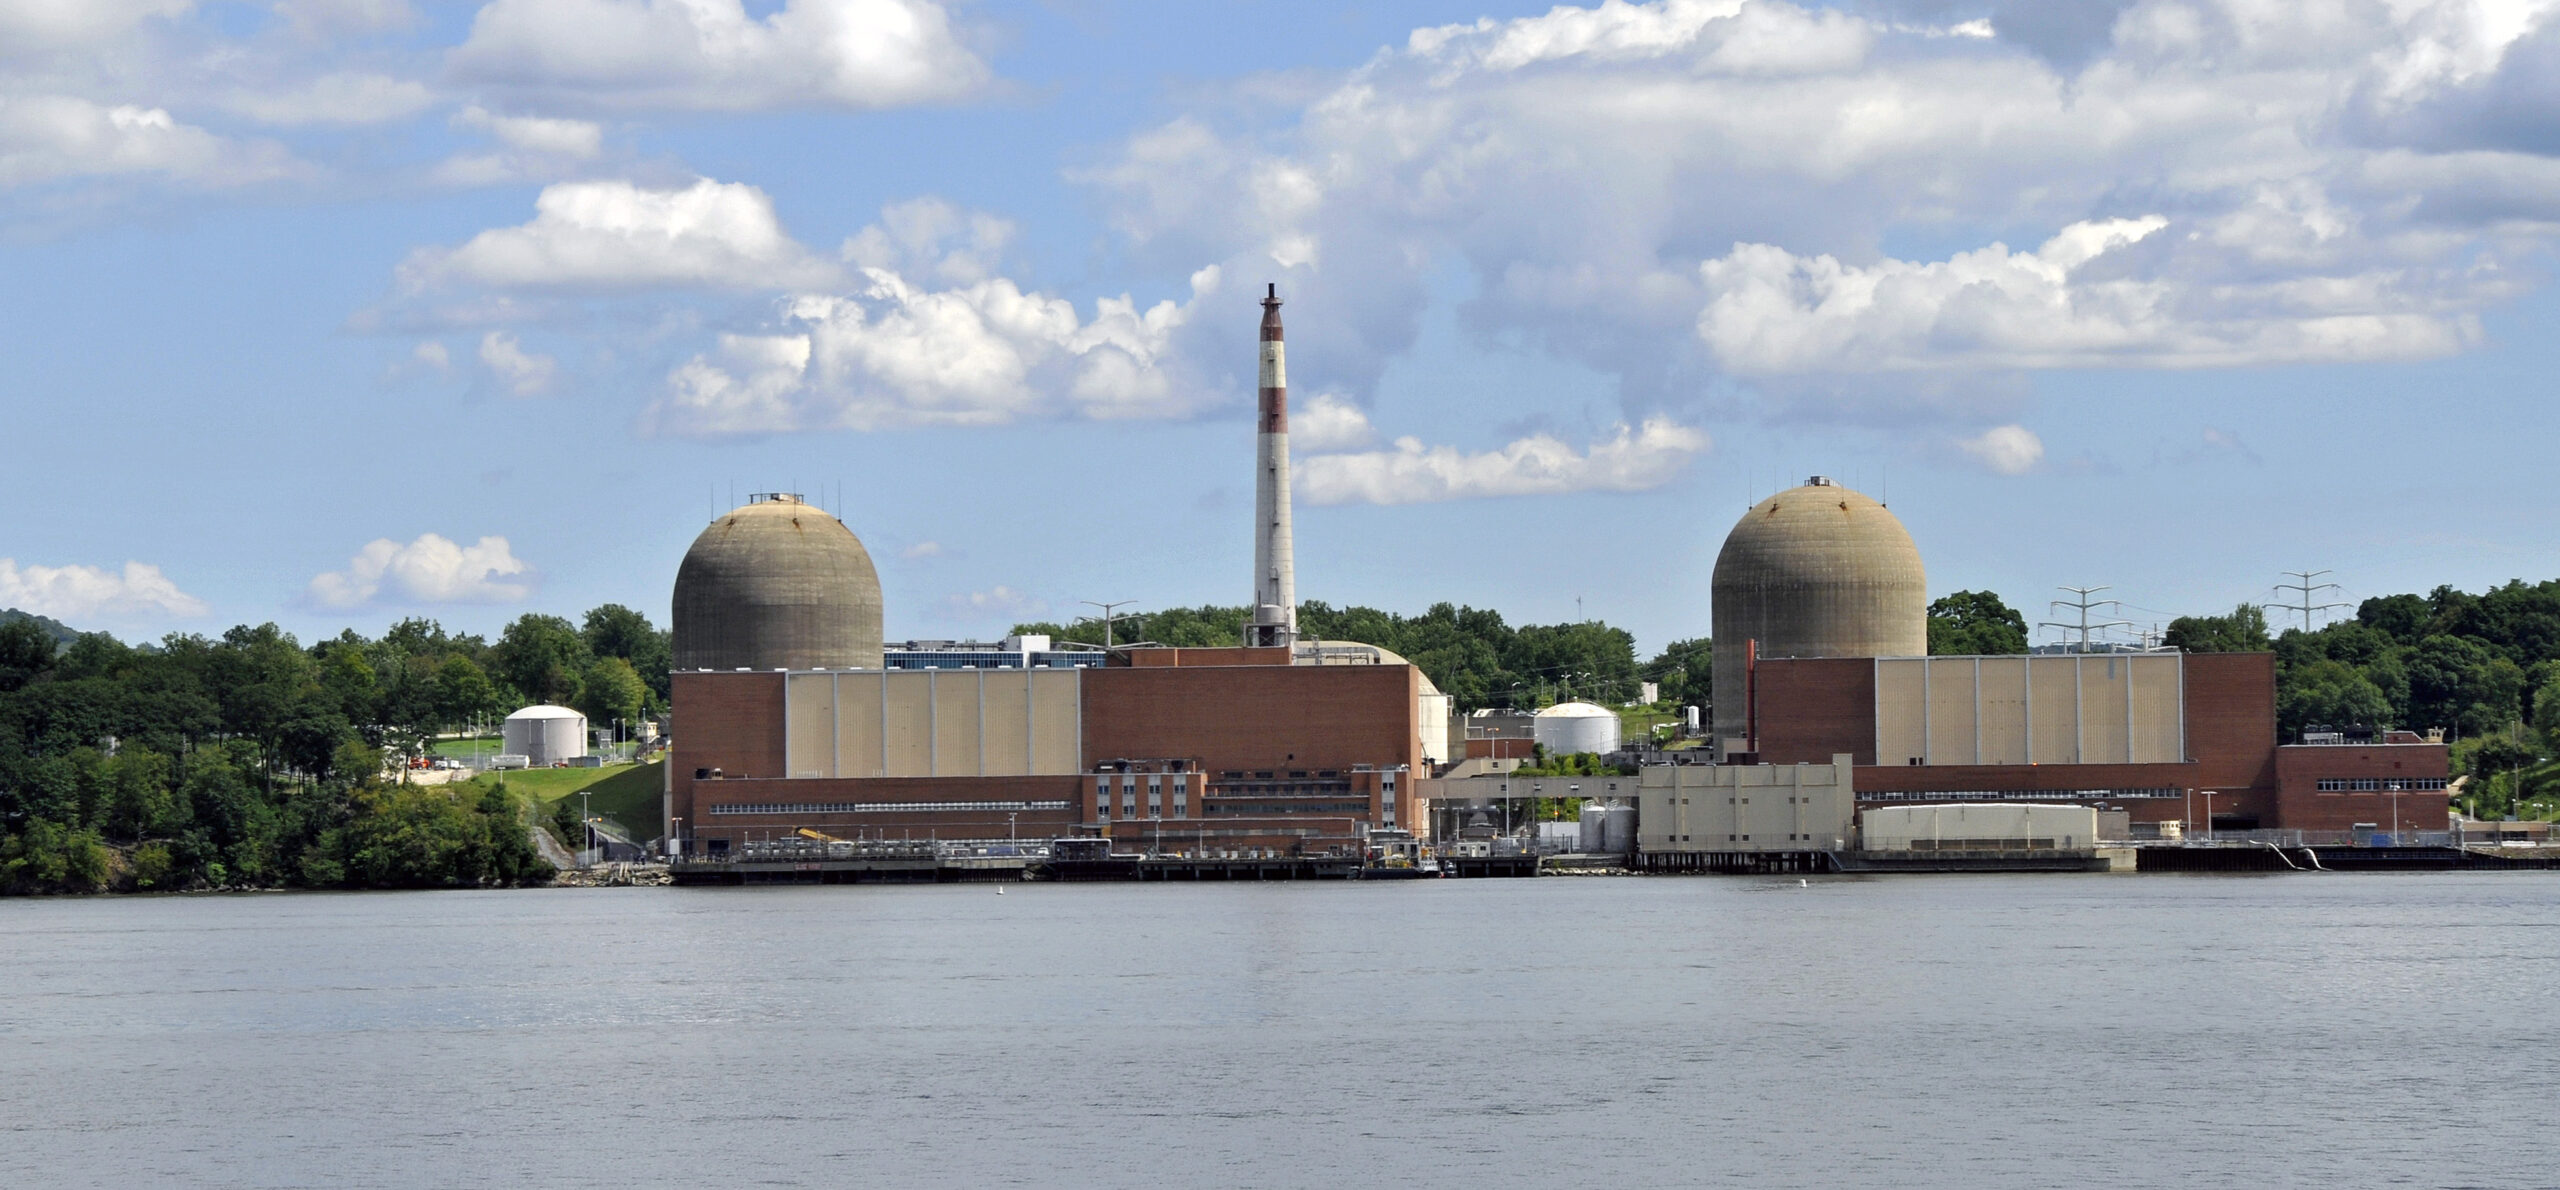 Indian Point Energy Center v Buchananu v ameriški zvezni državi New York je bil kraj prvega torijevega reaktorja na svetu